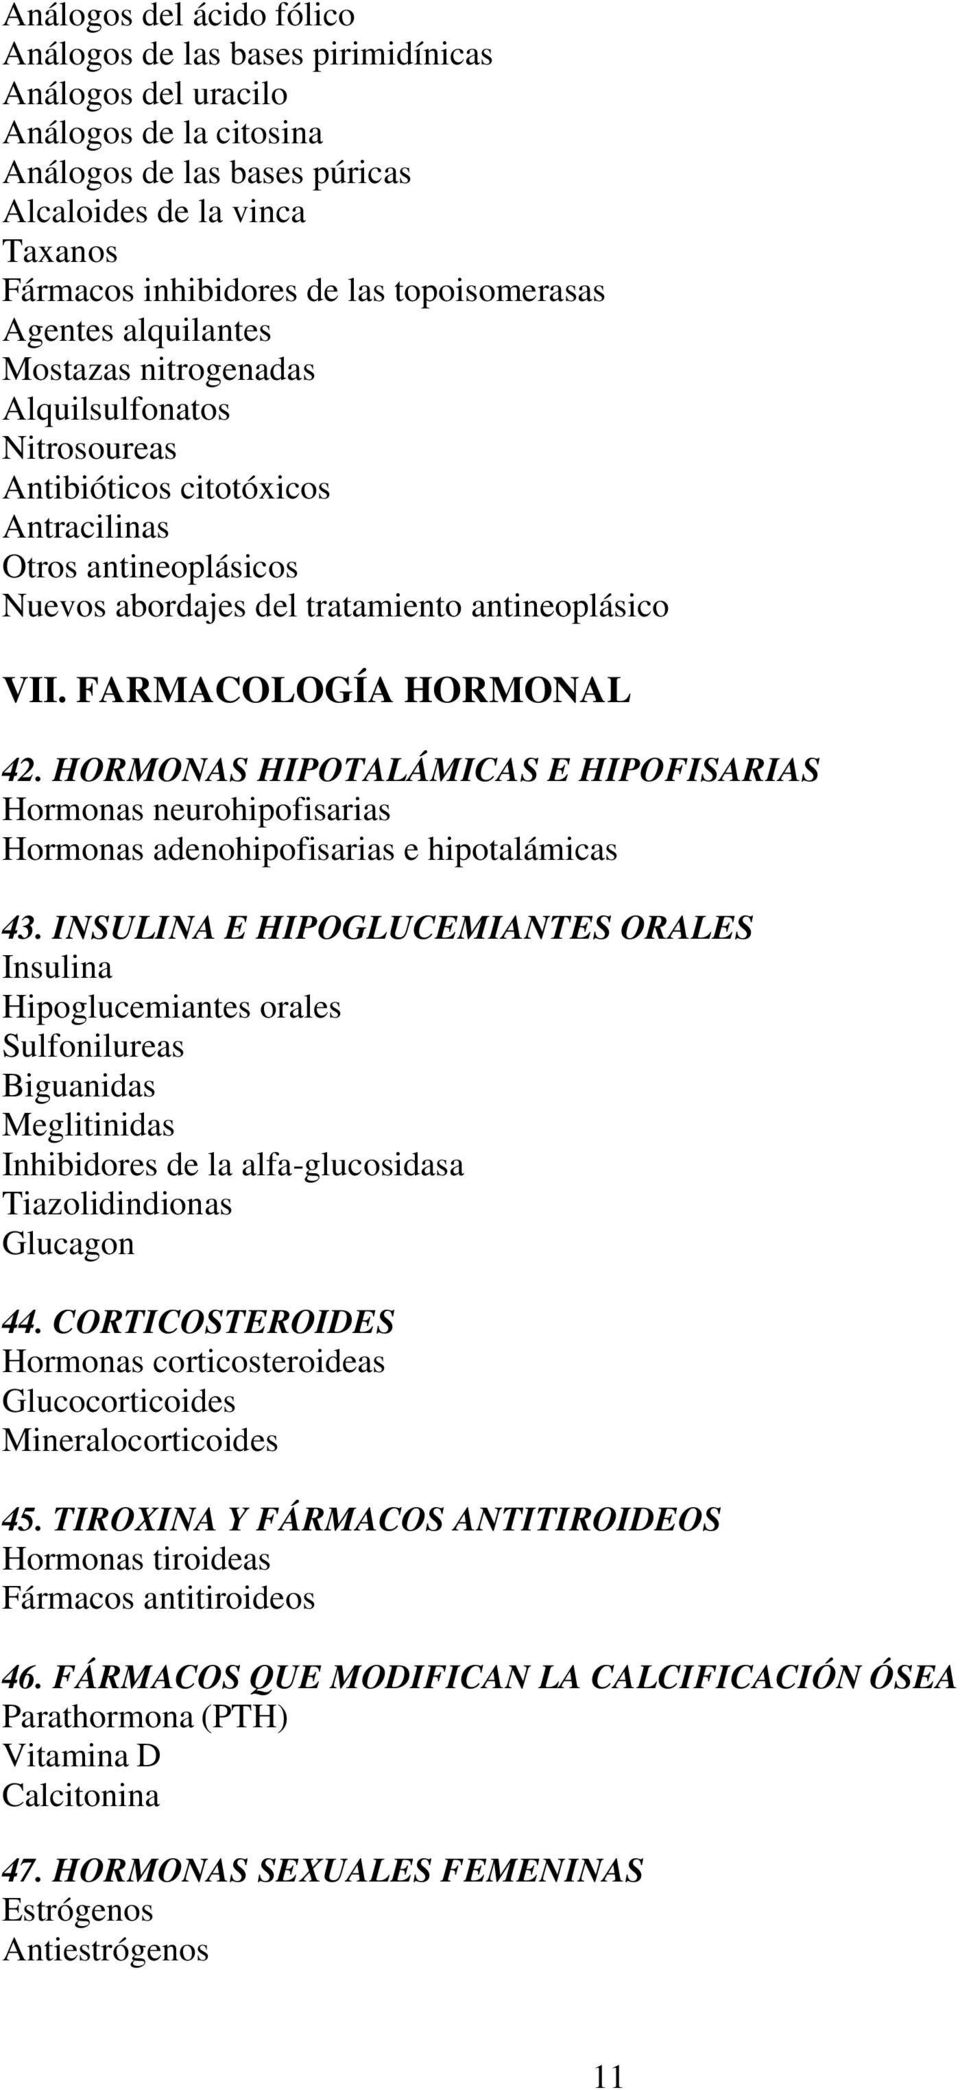 FARMACOLOGÍA HORMONAL 42. HORMONAS HIPOTALÁMICAS E HIPOFISARIAS Hormonas neurohipofisarias Hormonas adenohipofisarias e hipotalámicas 43.